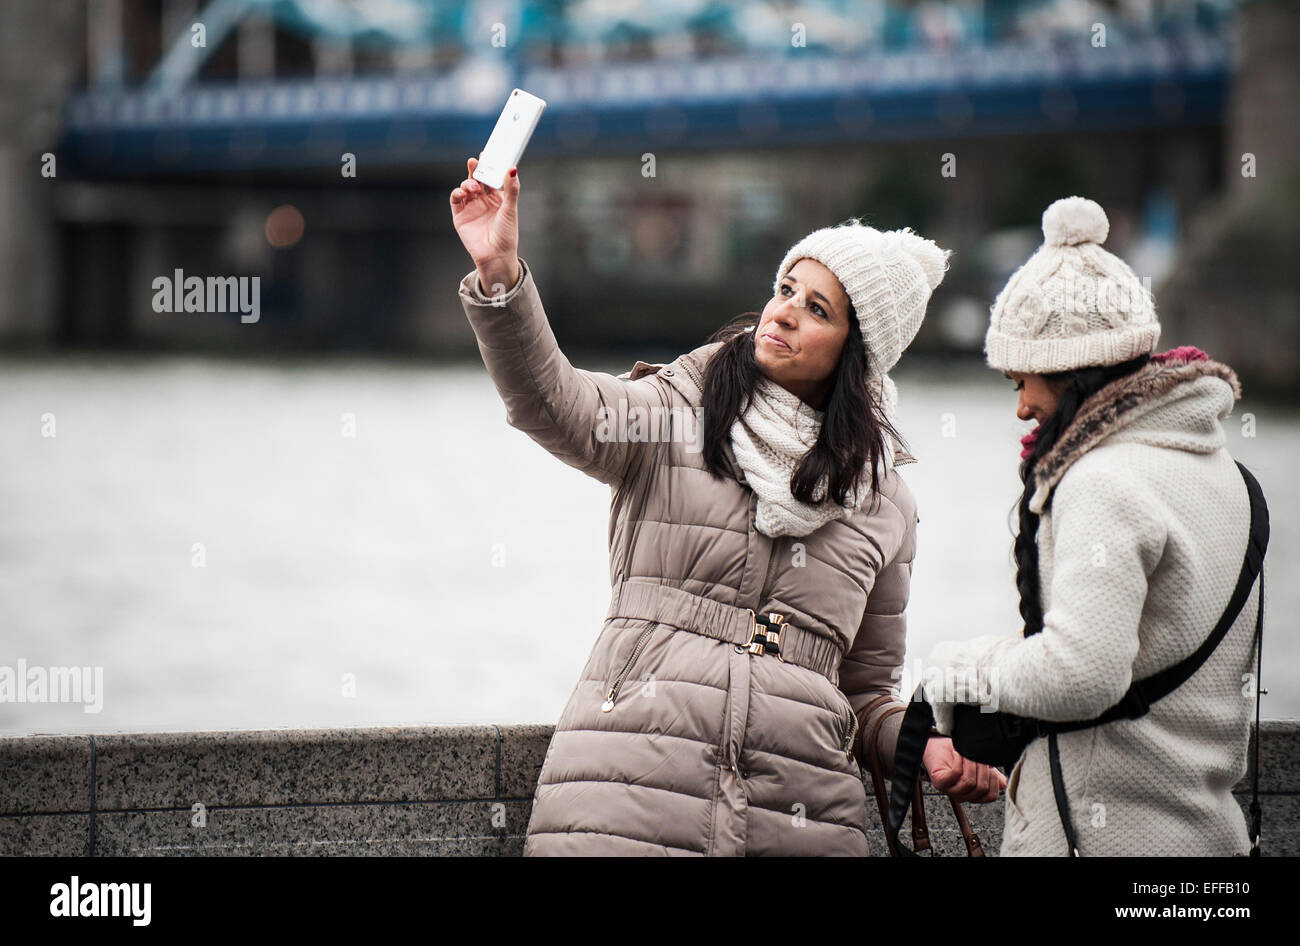 Une femme prenant une avec un téléphone mobile selfies. Banque D'Images